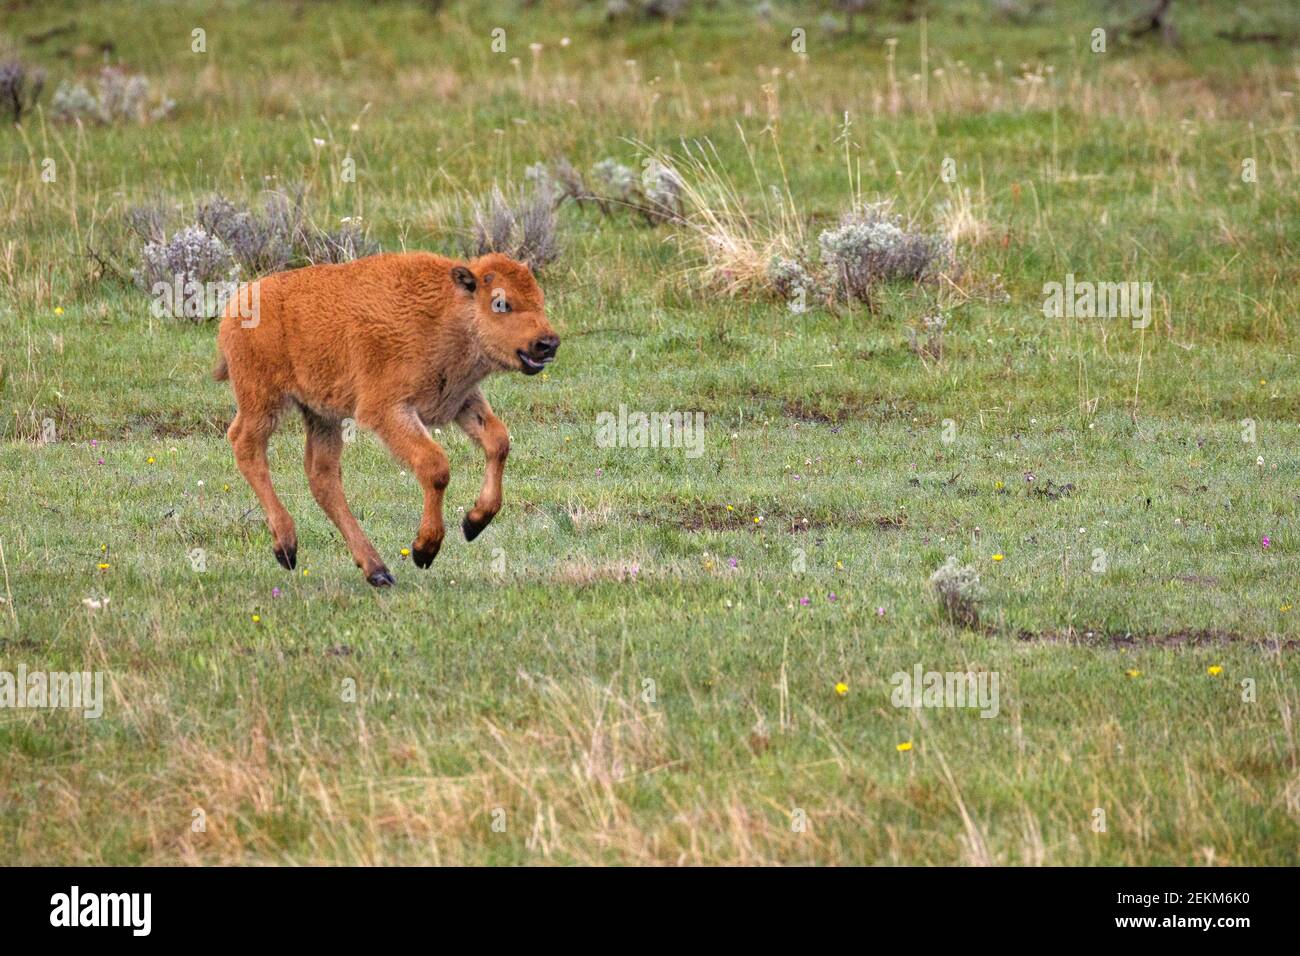 Yellowstone National Park, Wyoming: American Bison (bison bison), vitello conosciuto anche come "cani rossi" che corre attraverso l'erba nella Lamar Valley Foto Stock